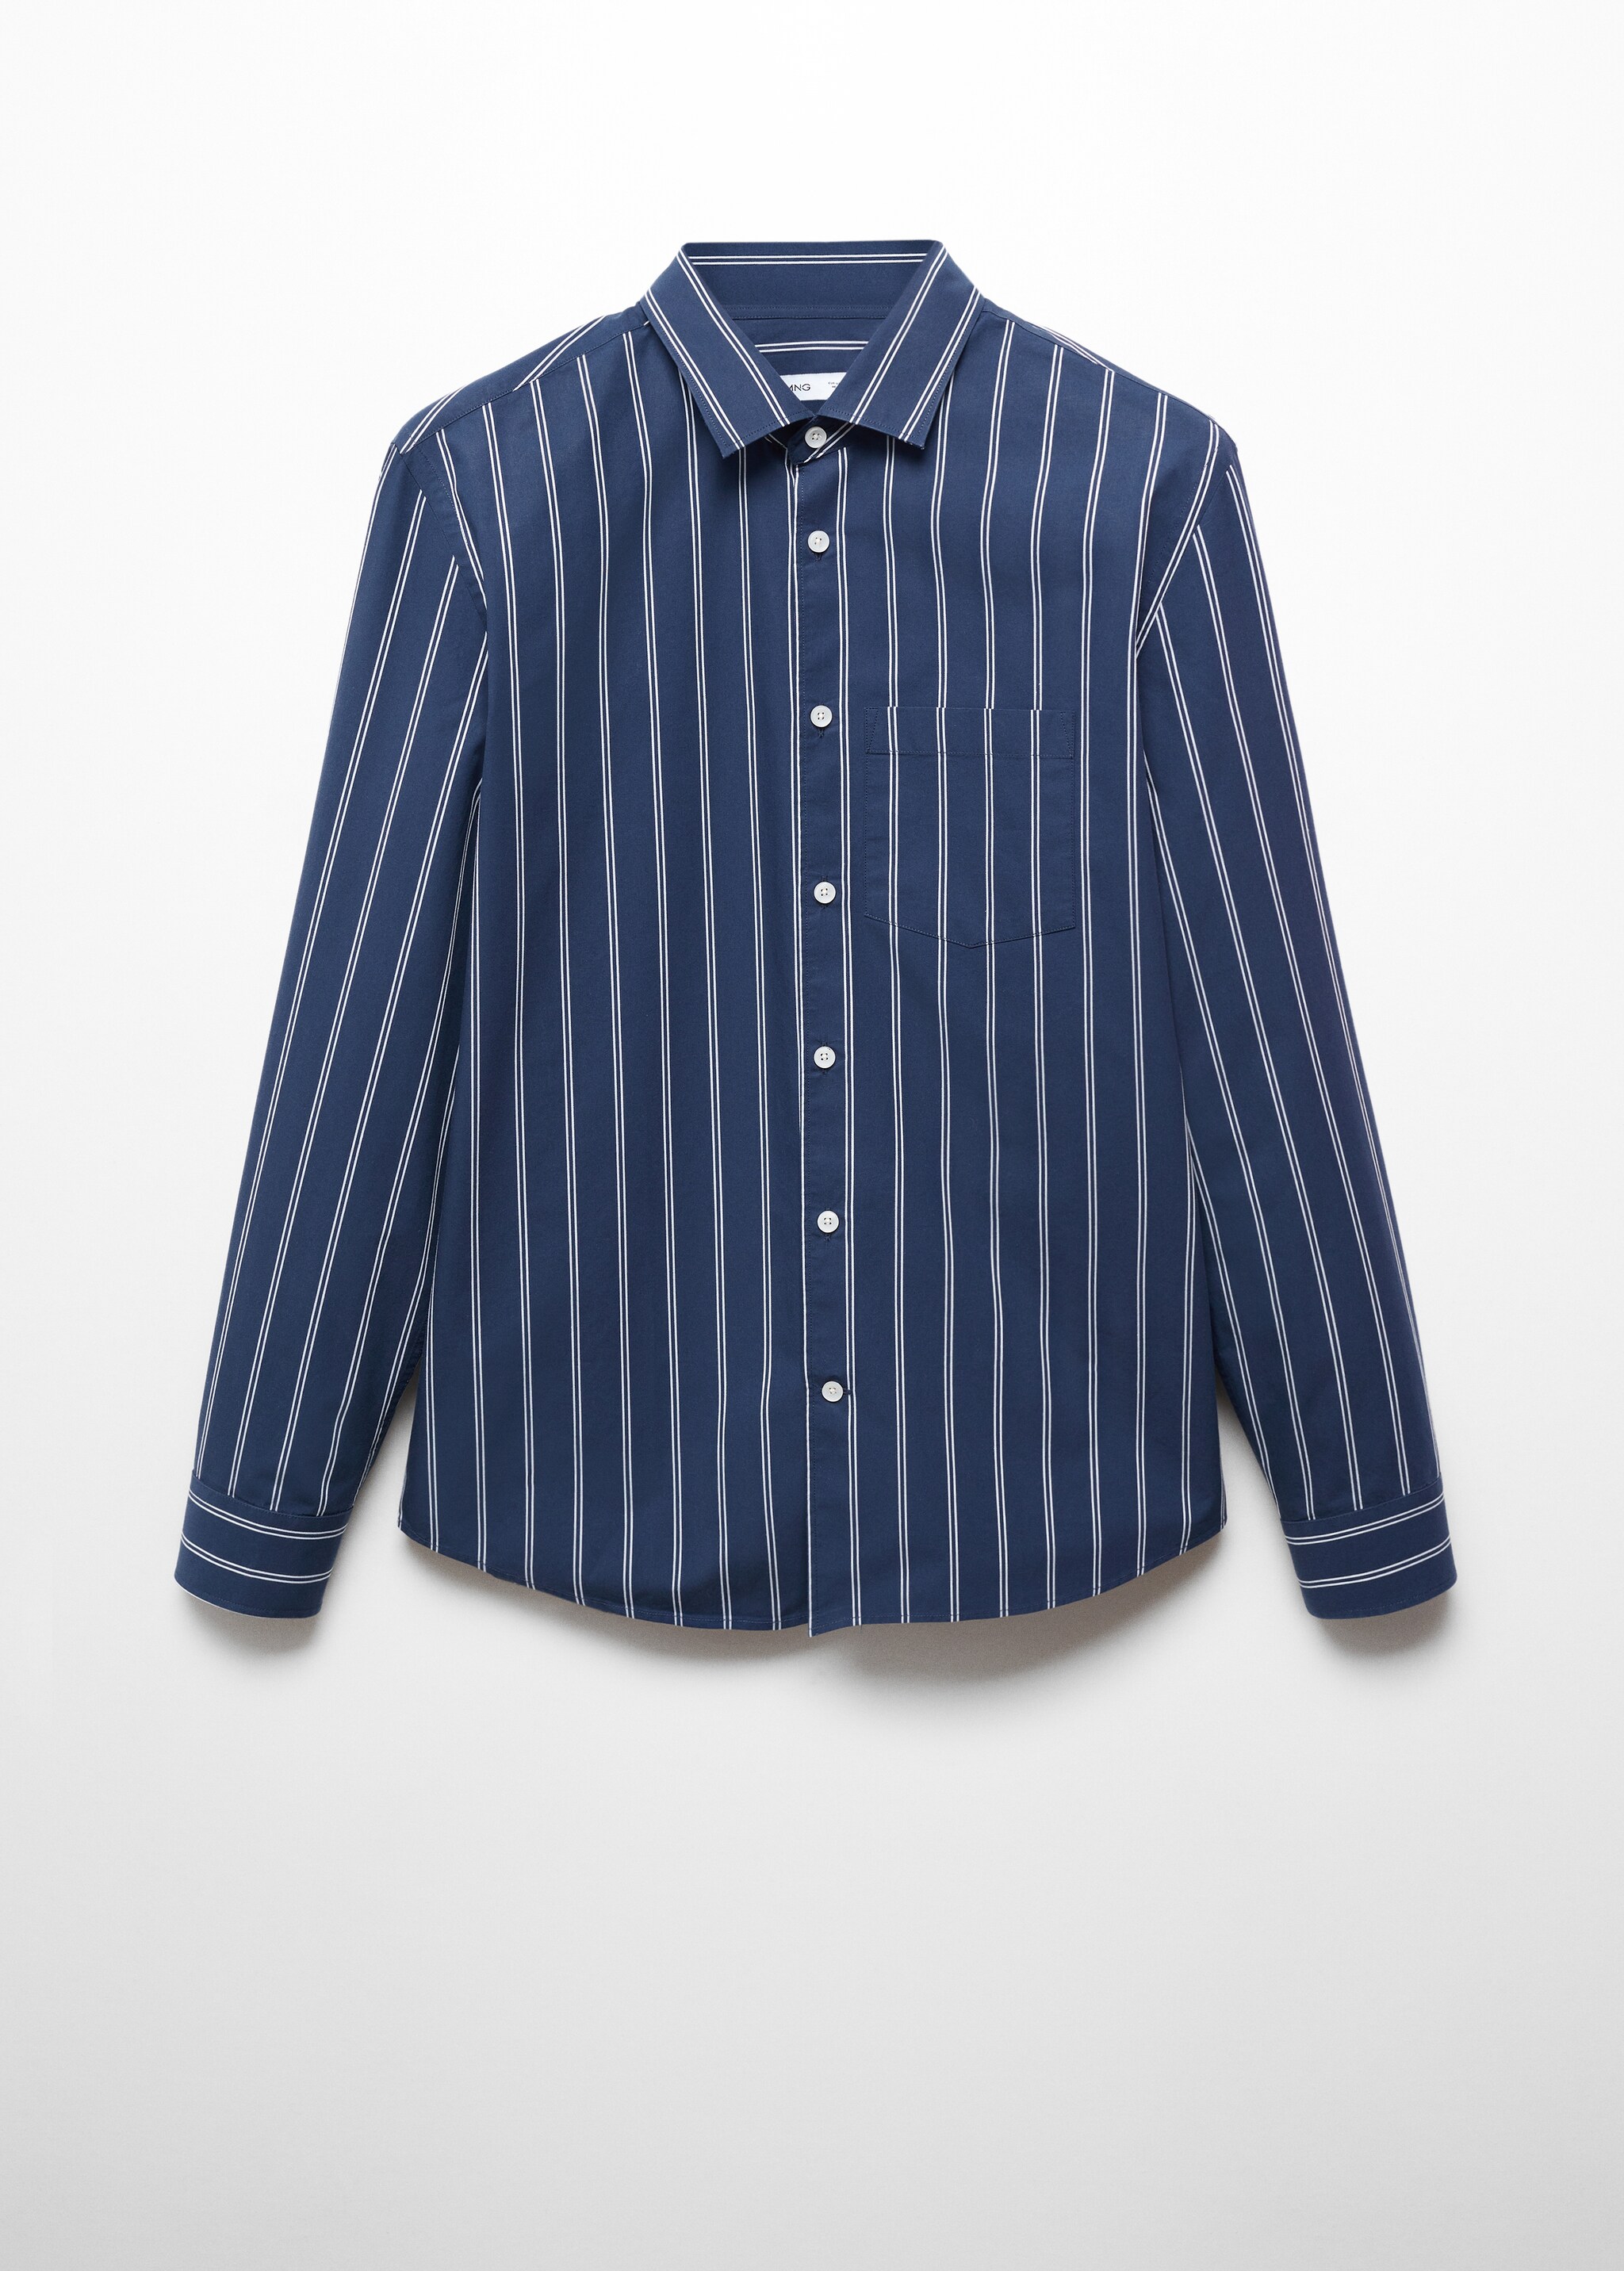 Camisa classic fit algodón seersucker rayas - Artículo sin modelo